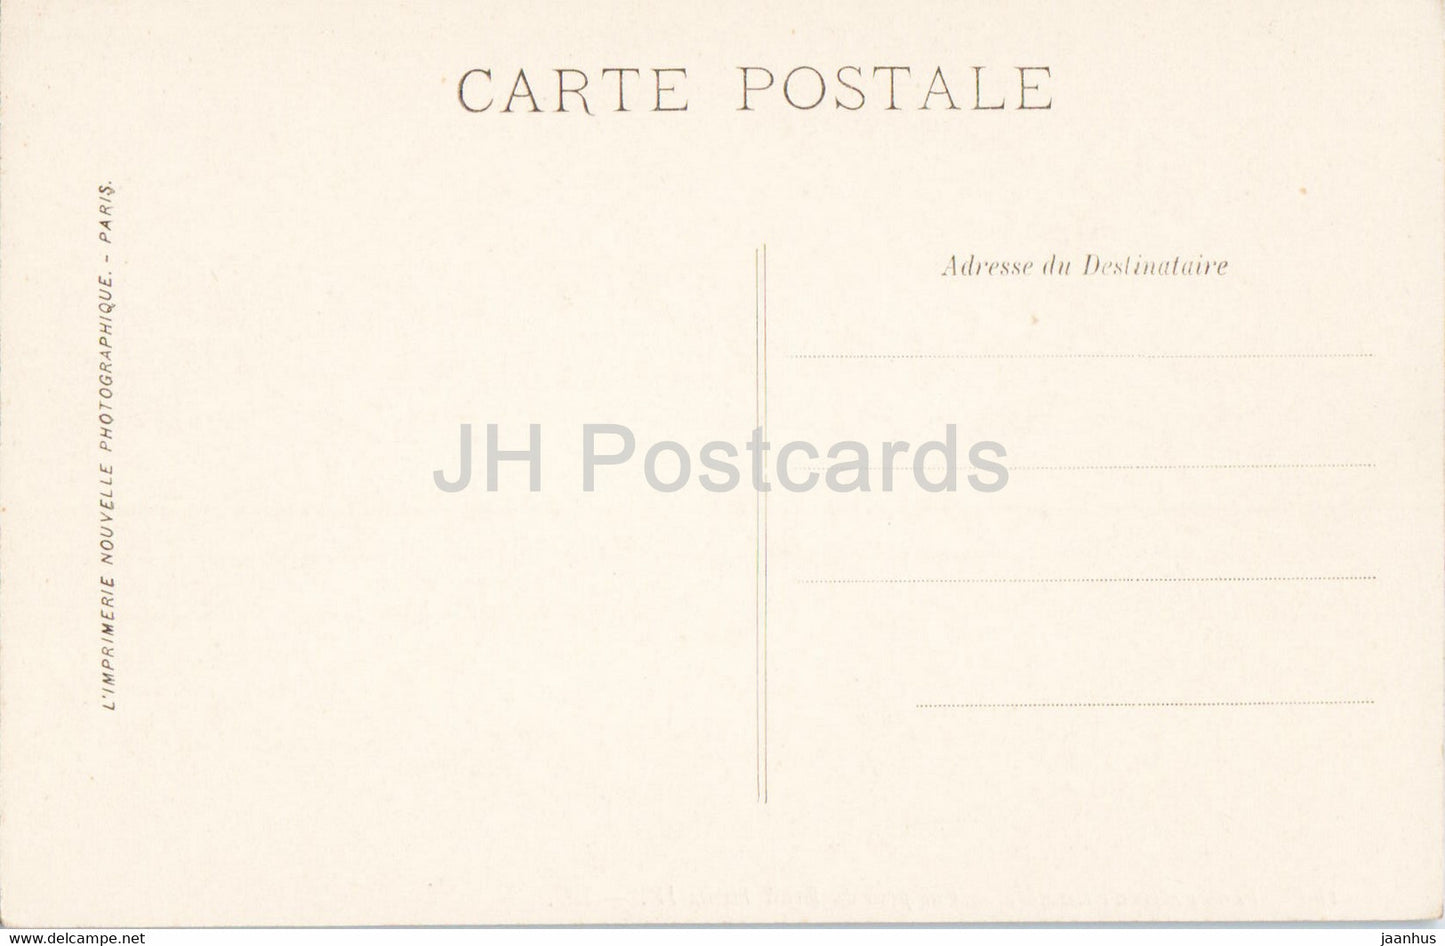 Fontainebleau - Vue prise du Mail Henri IV - 180 - alte Postkarte - Frankreich - unbenutzt